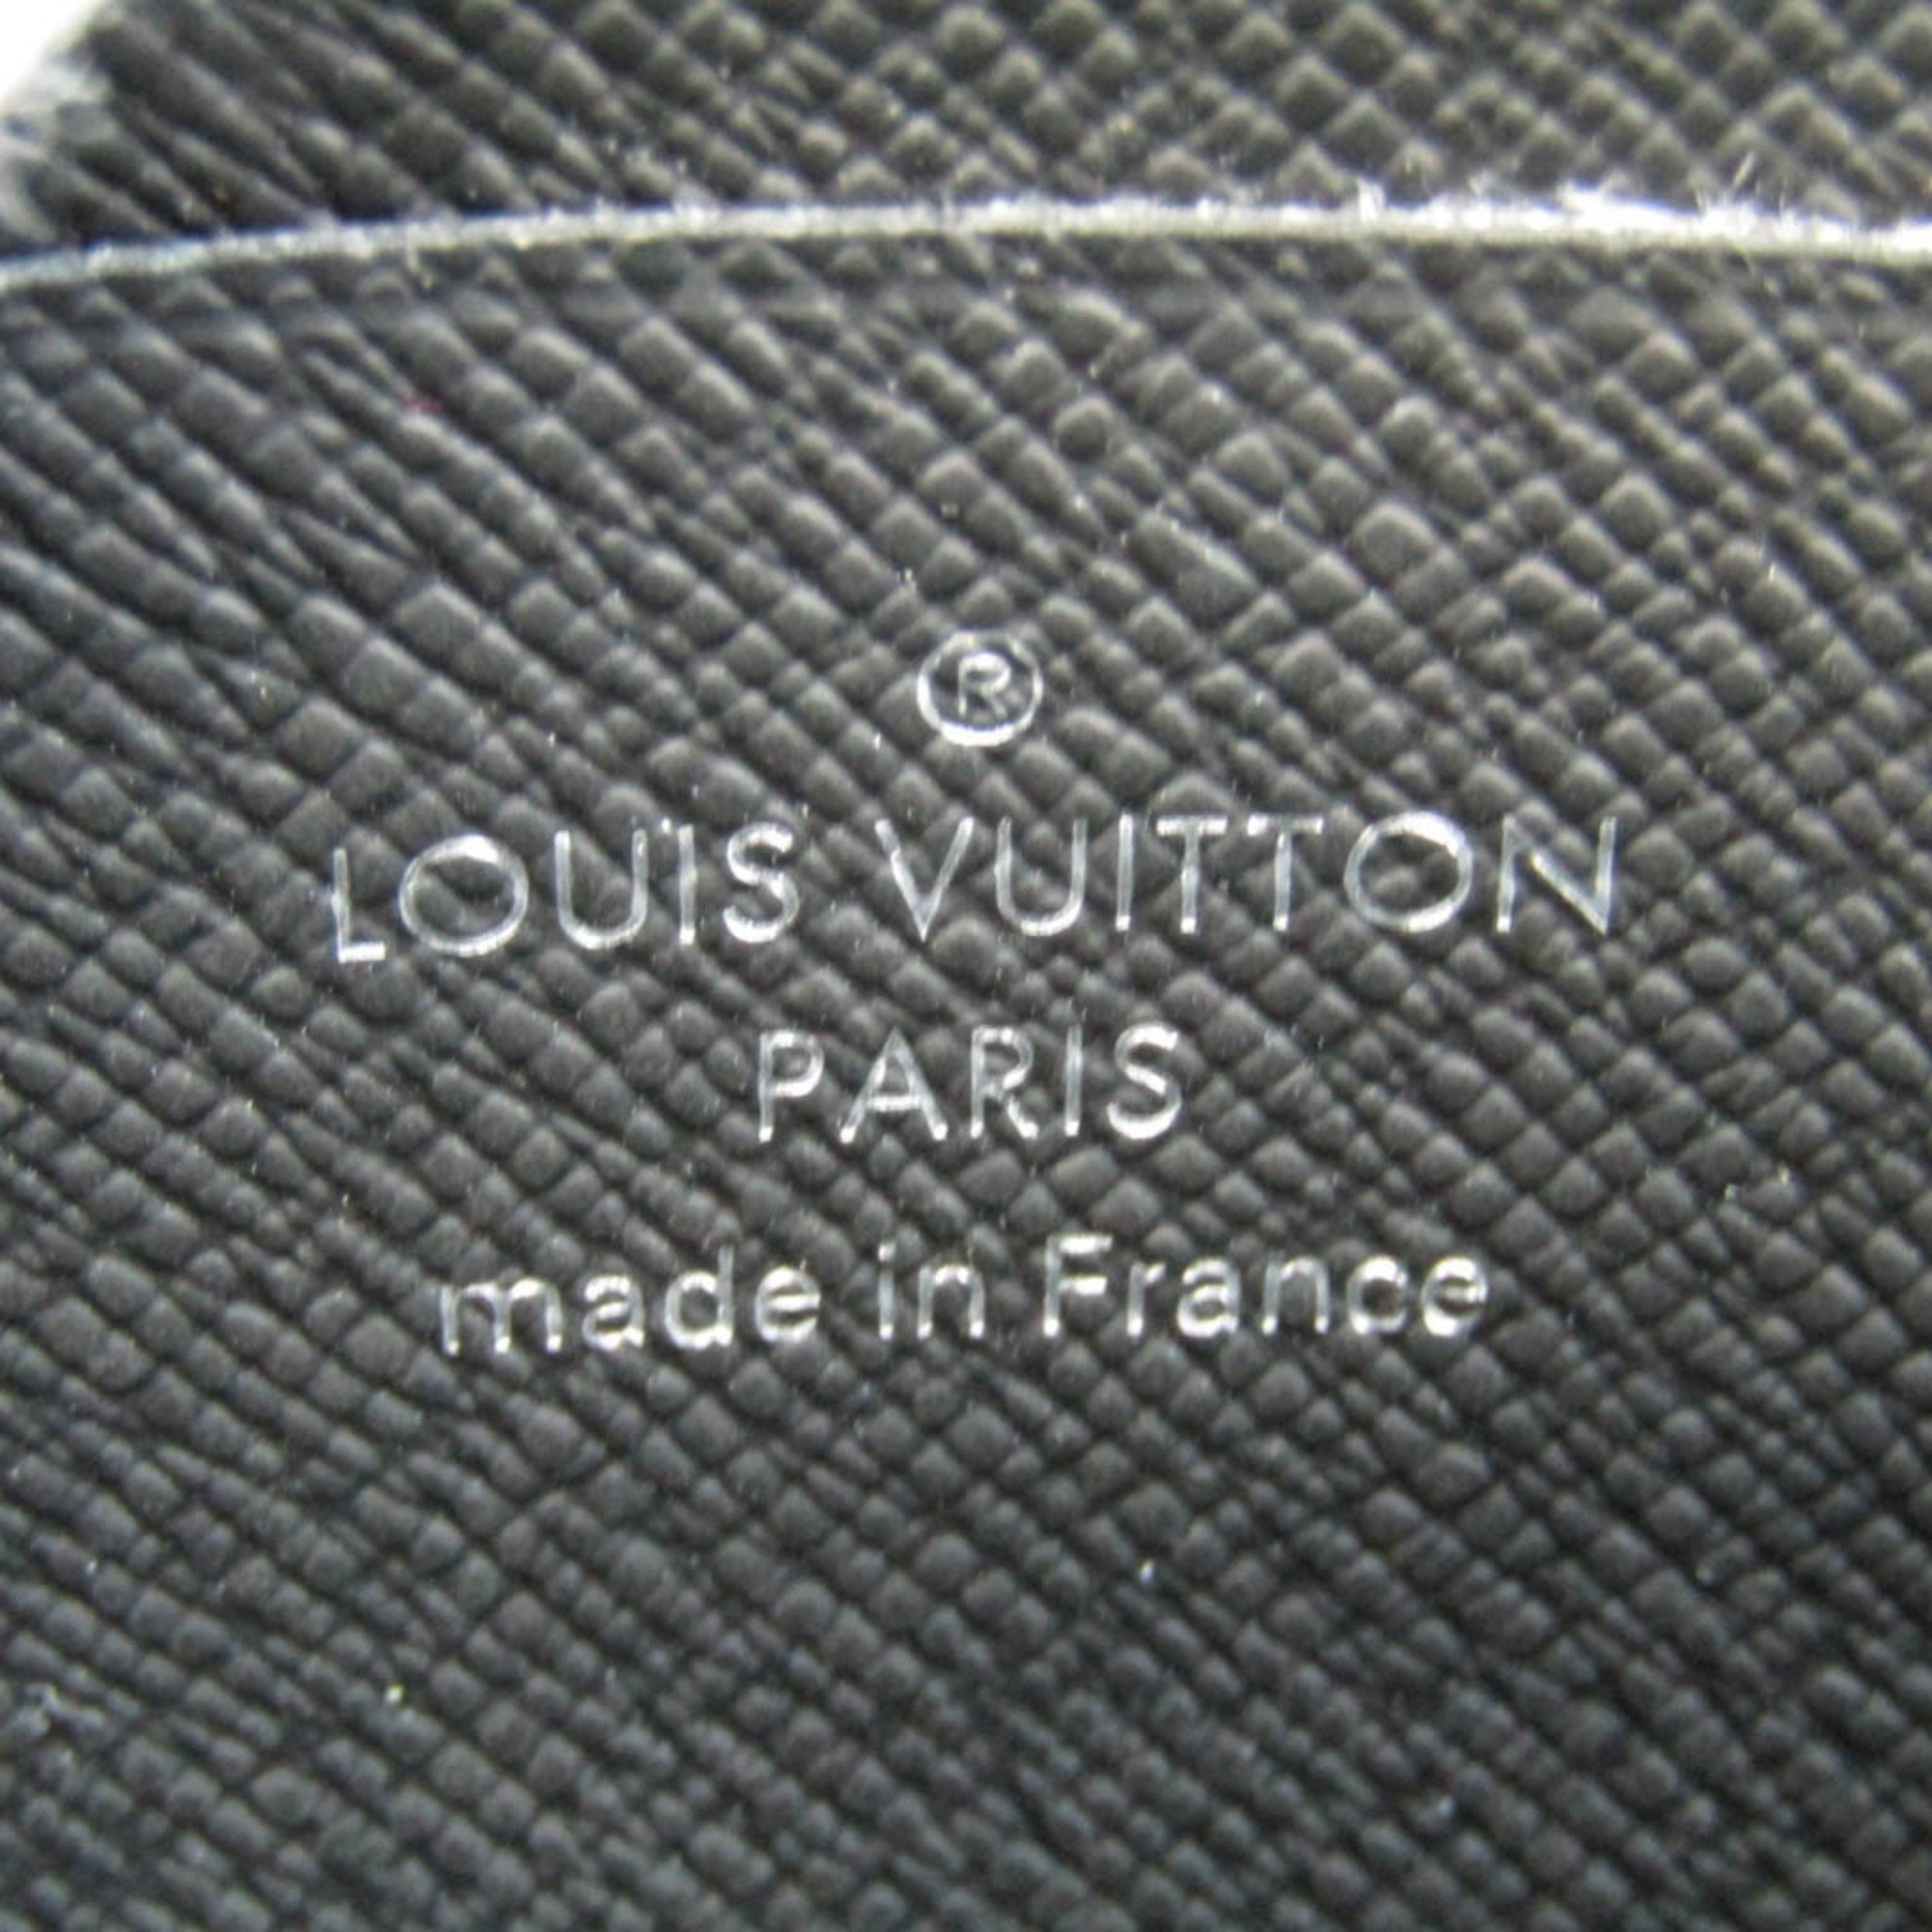 ルイ・ヴィトン(Louis Vuitton) タイガ ポルトモネ・ジュール M63375 メンズ タイガ 小銭入れ・コインケース ノワール